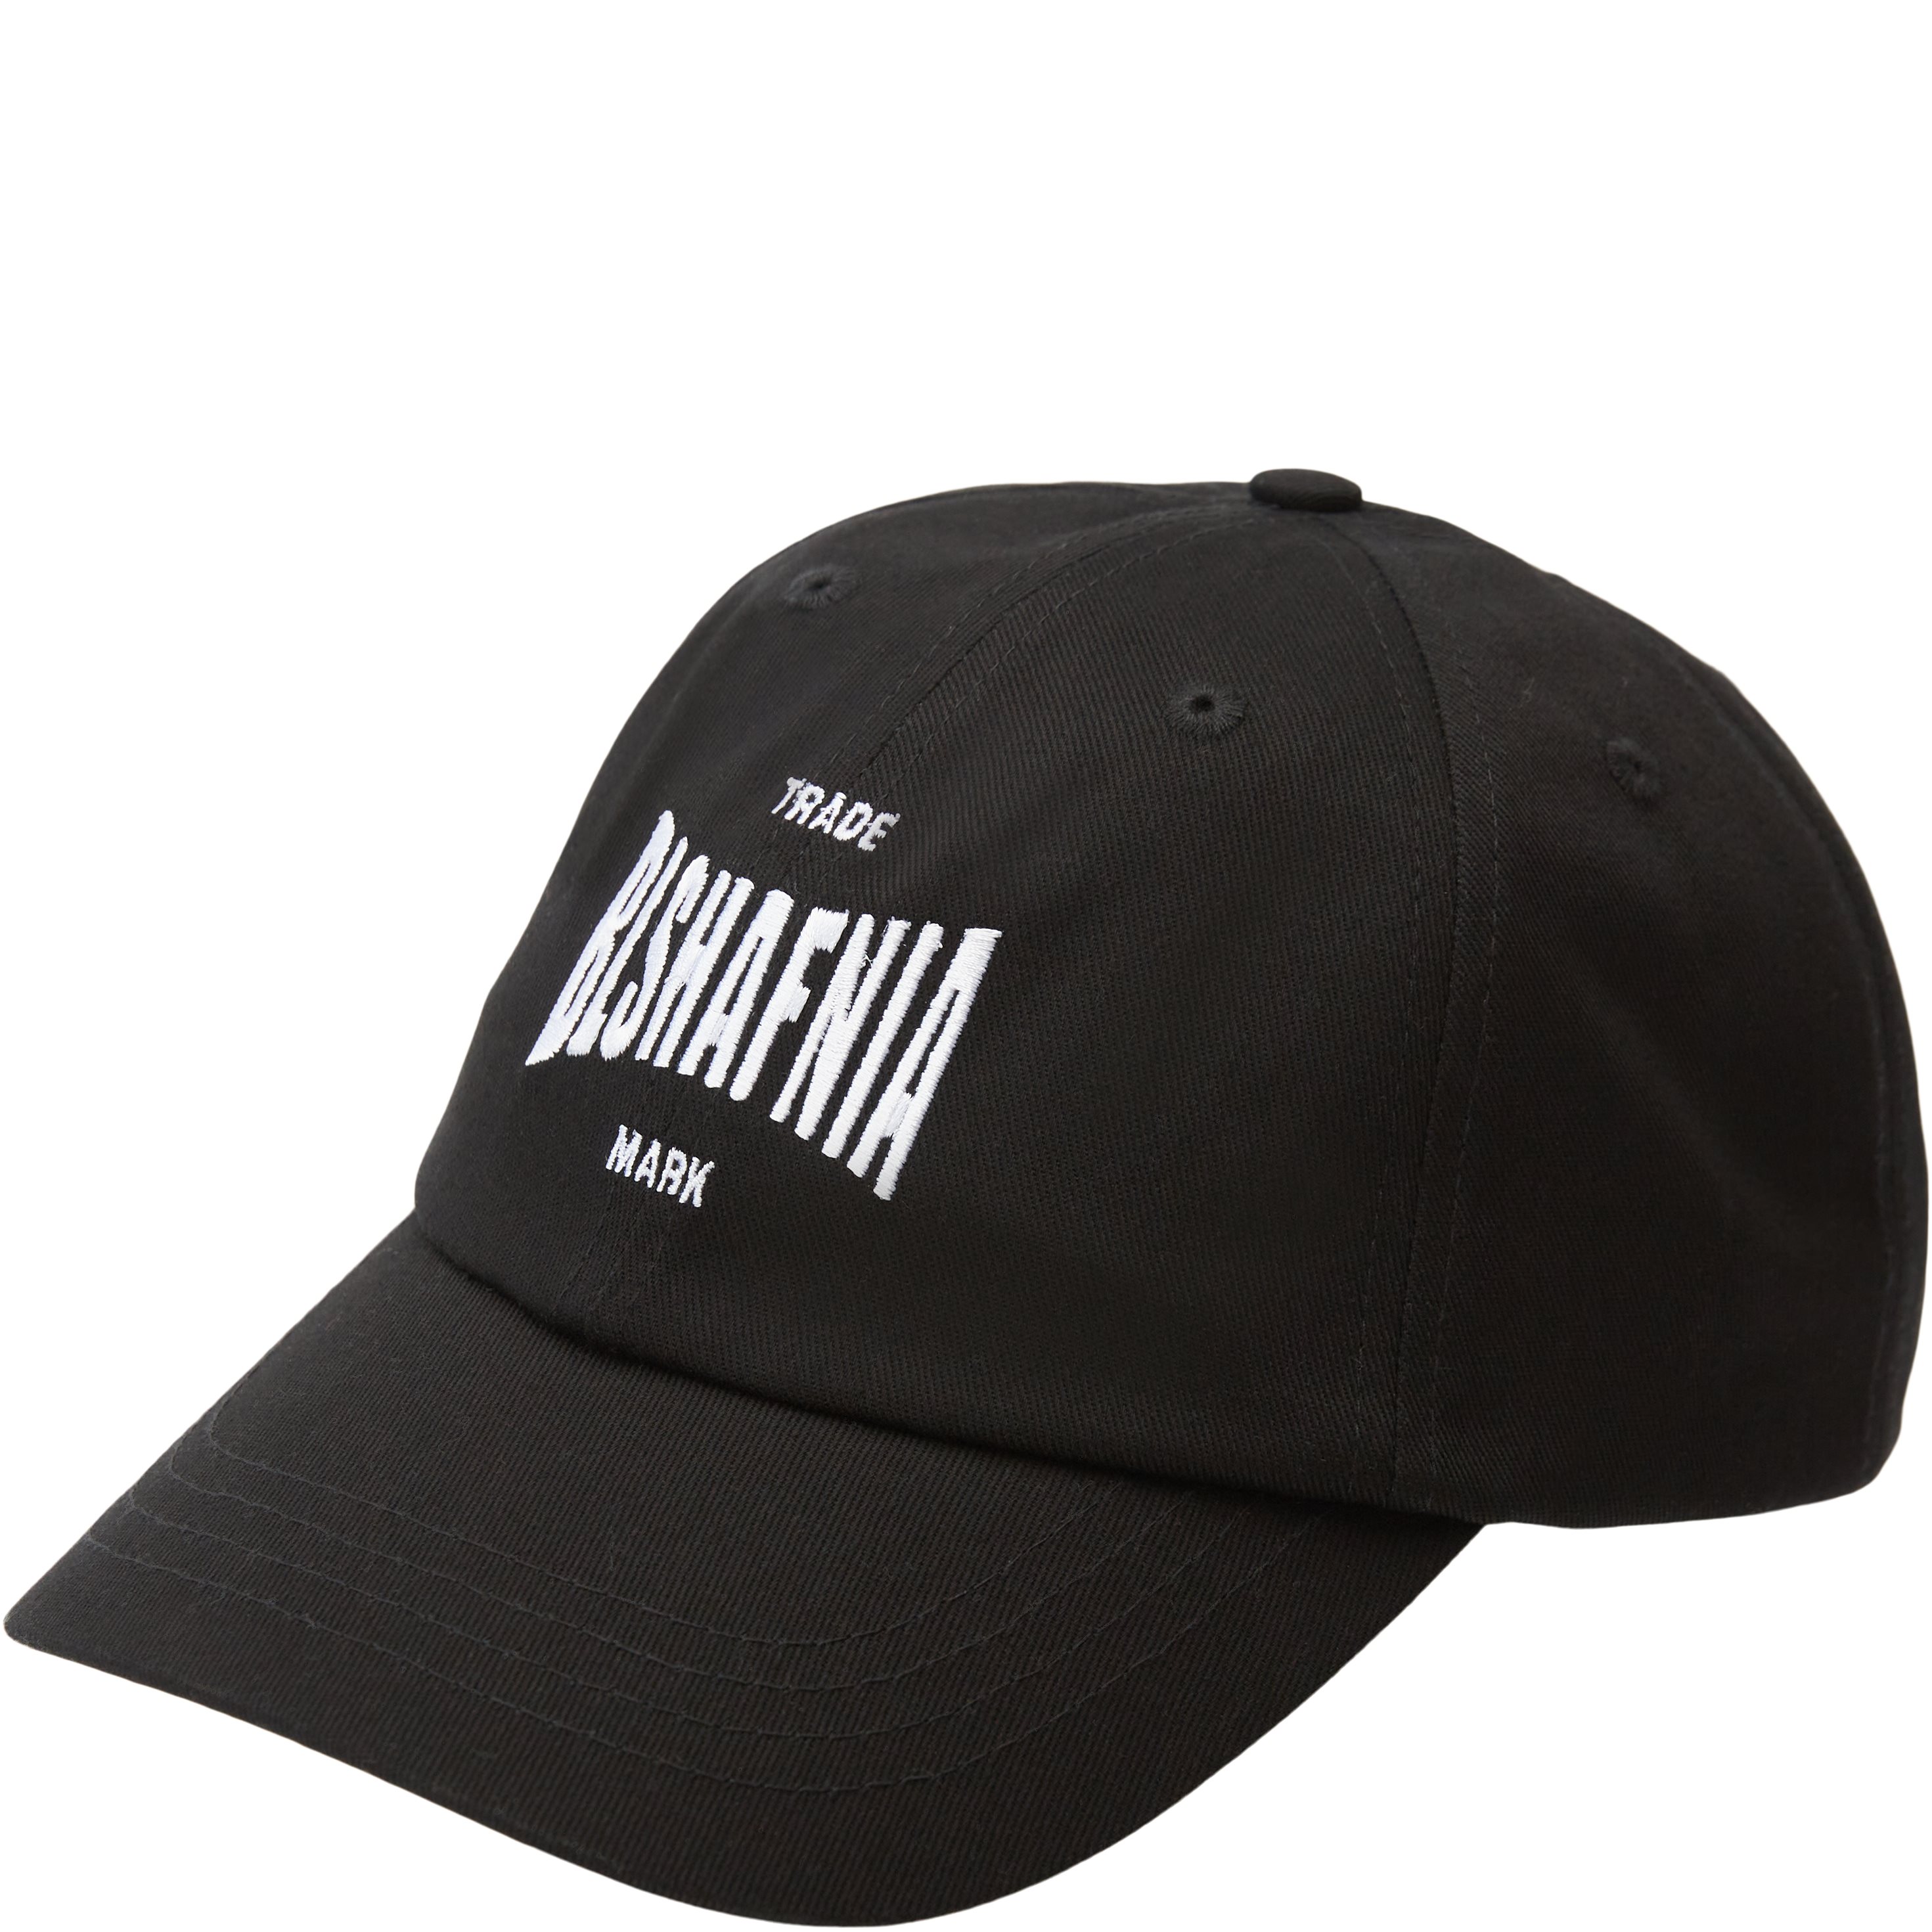 BLS Caps PAPI BALBOA CAP 2 Black